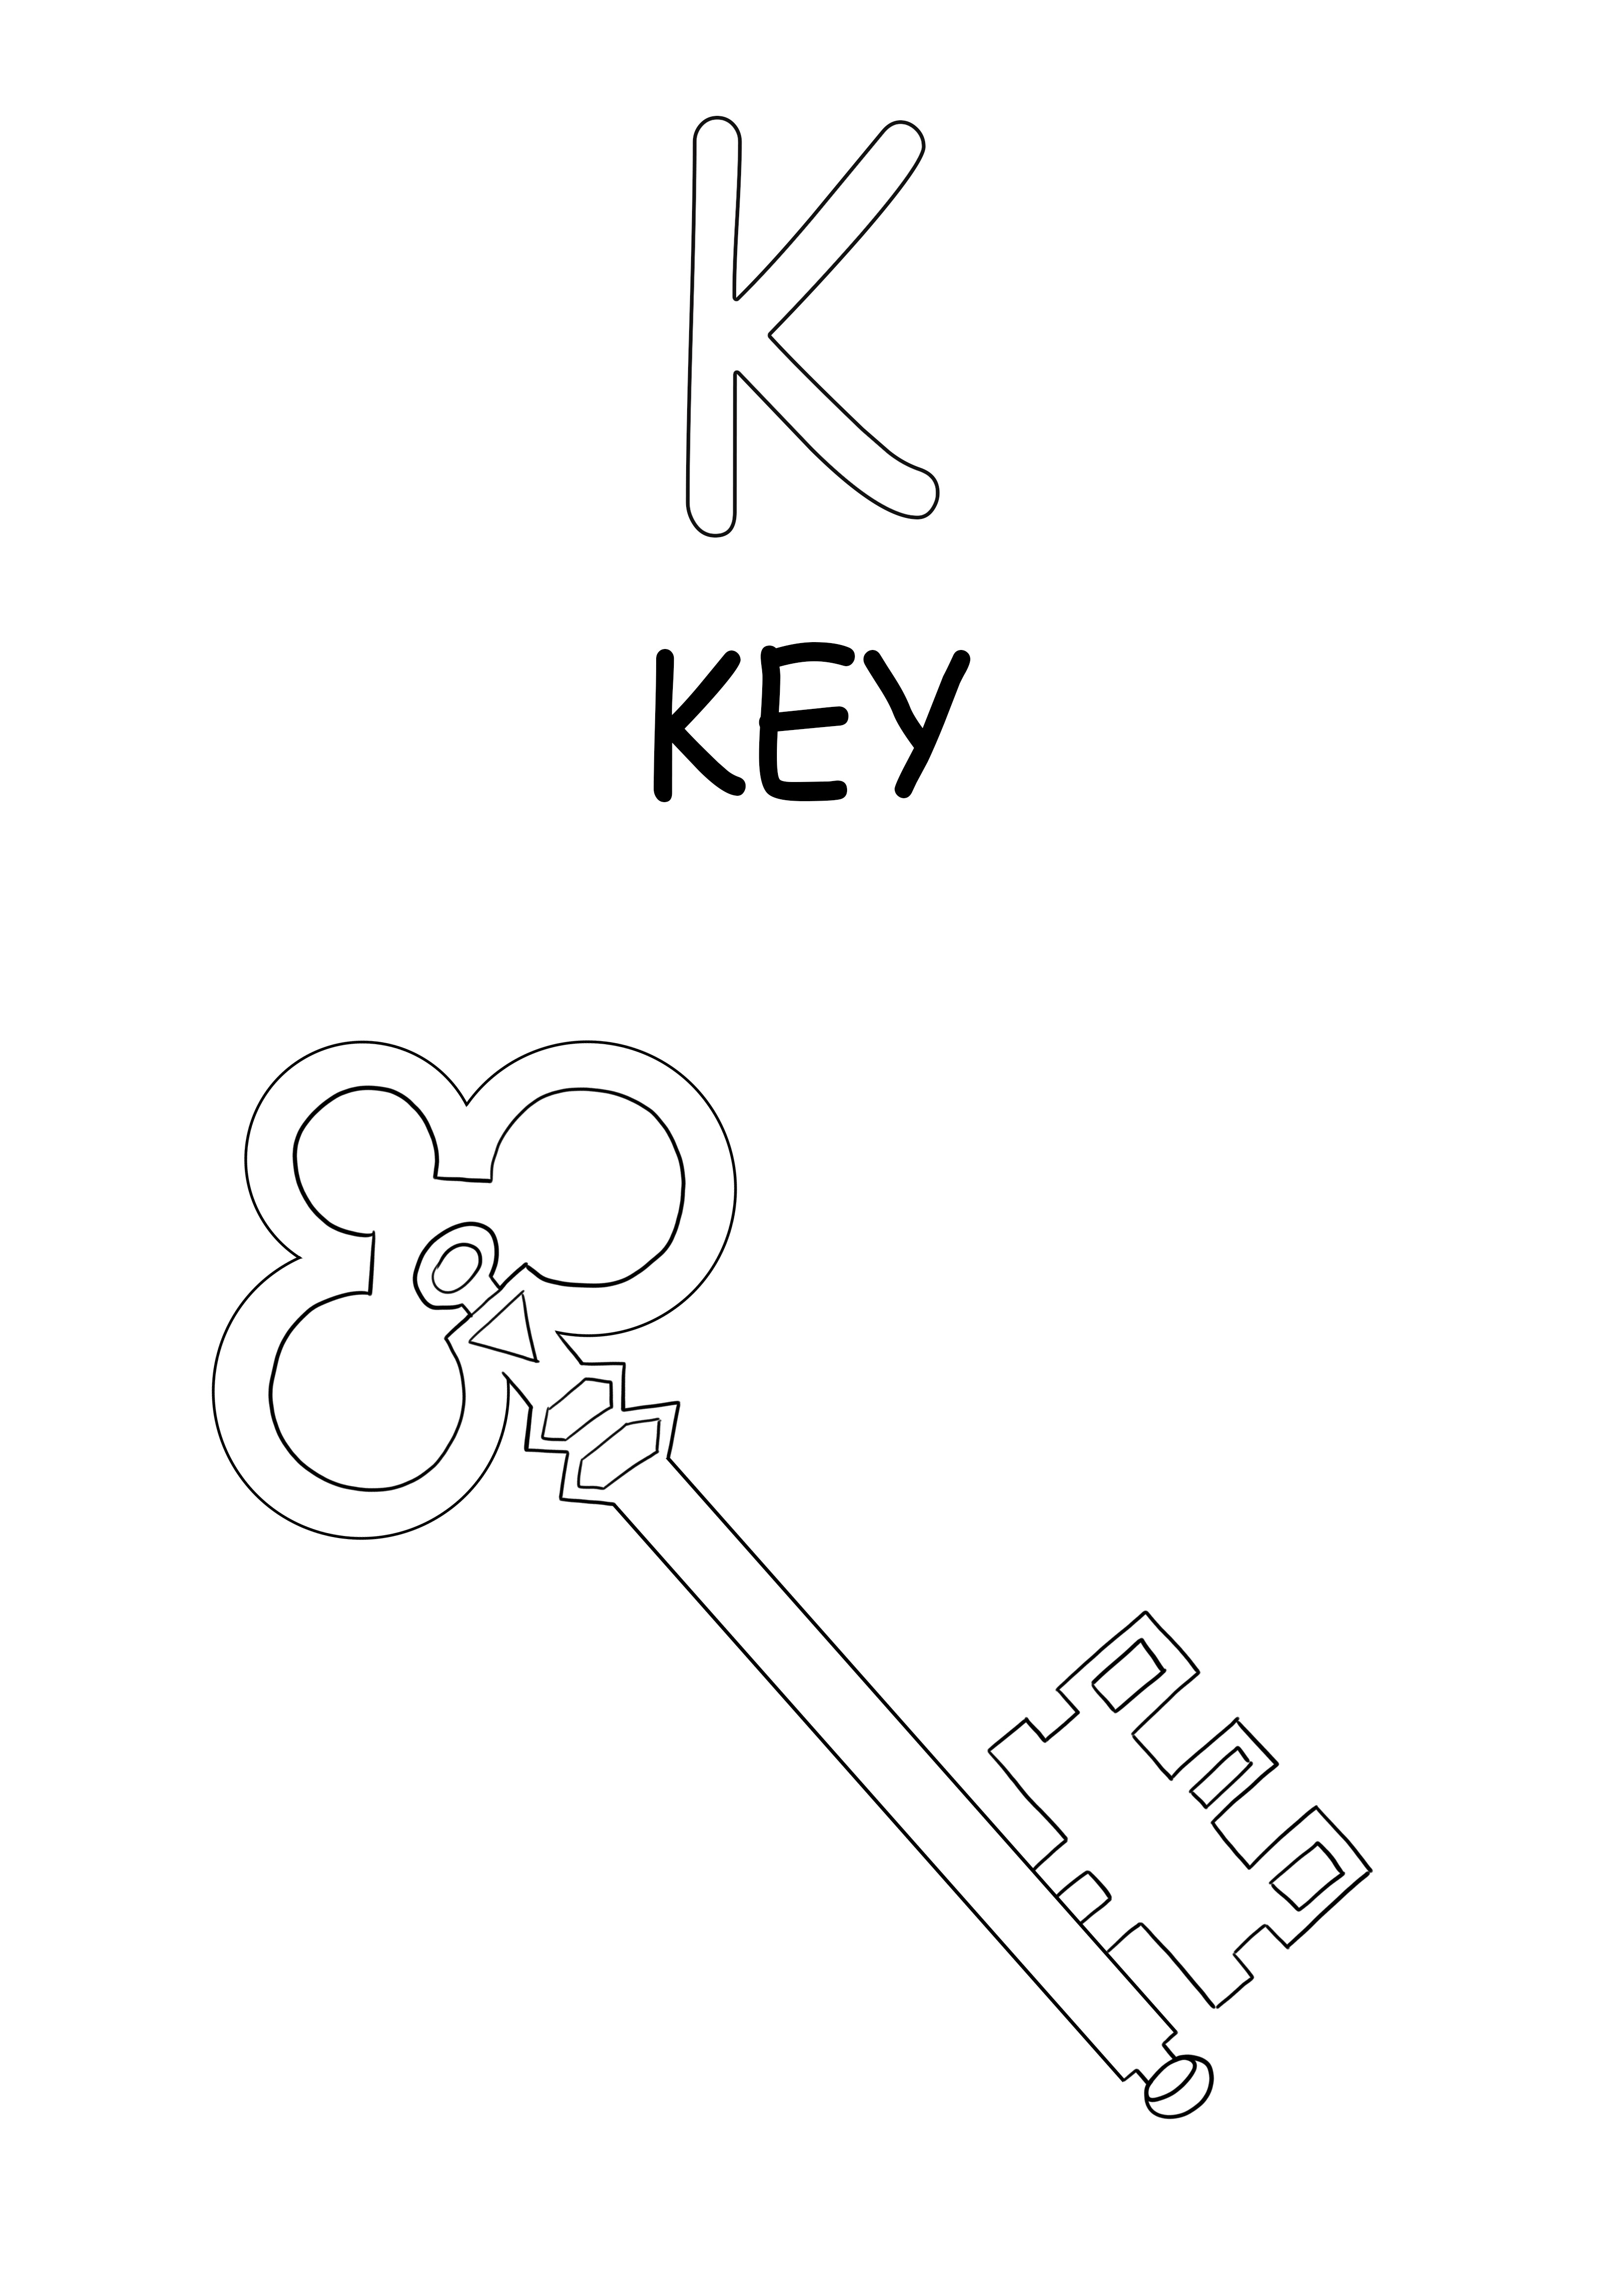 A K nagybetű a kulcsszínezésre és a kép szabad nyomtatására szolgál